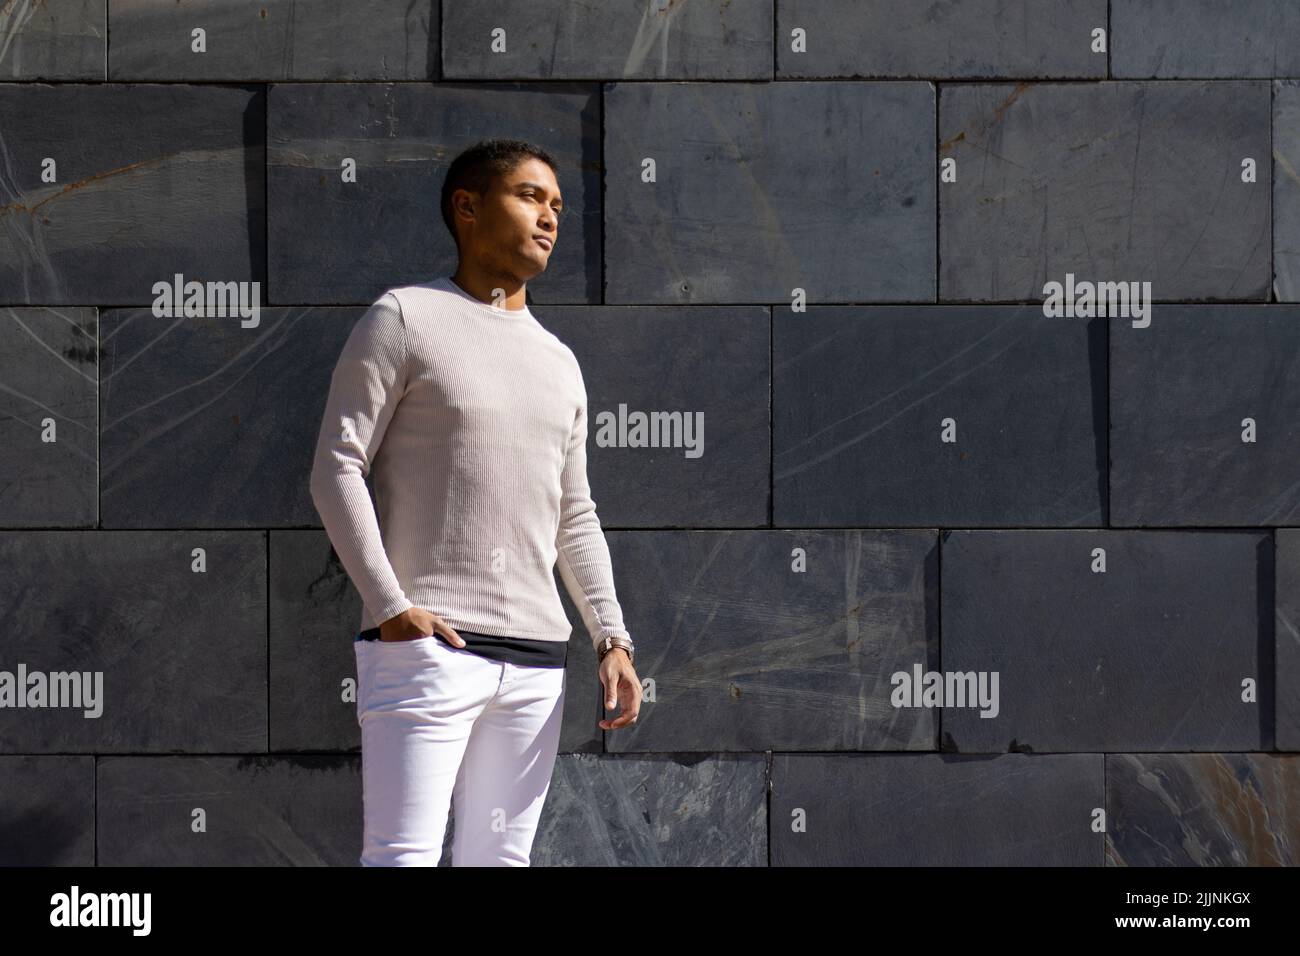 Homme hispanique posant dans un pantalon et un pull blanc, fond de flagstone horizontal Banque D'Images